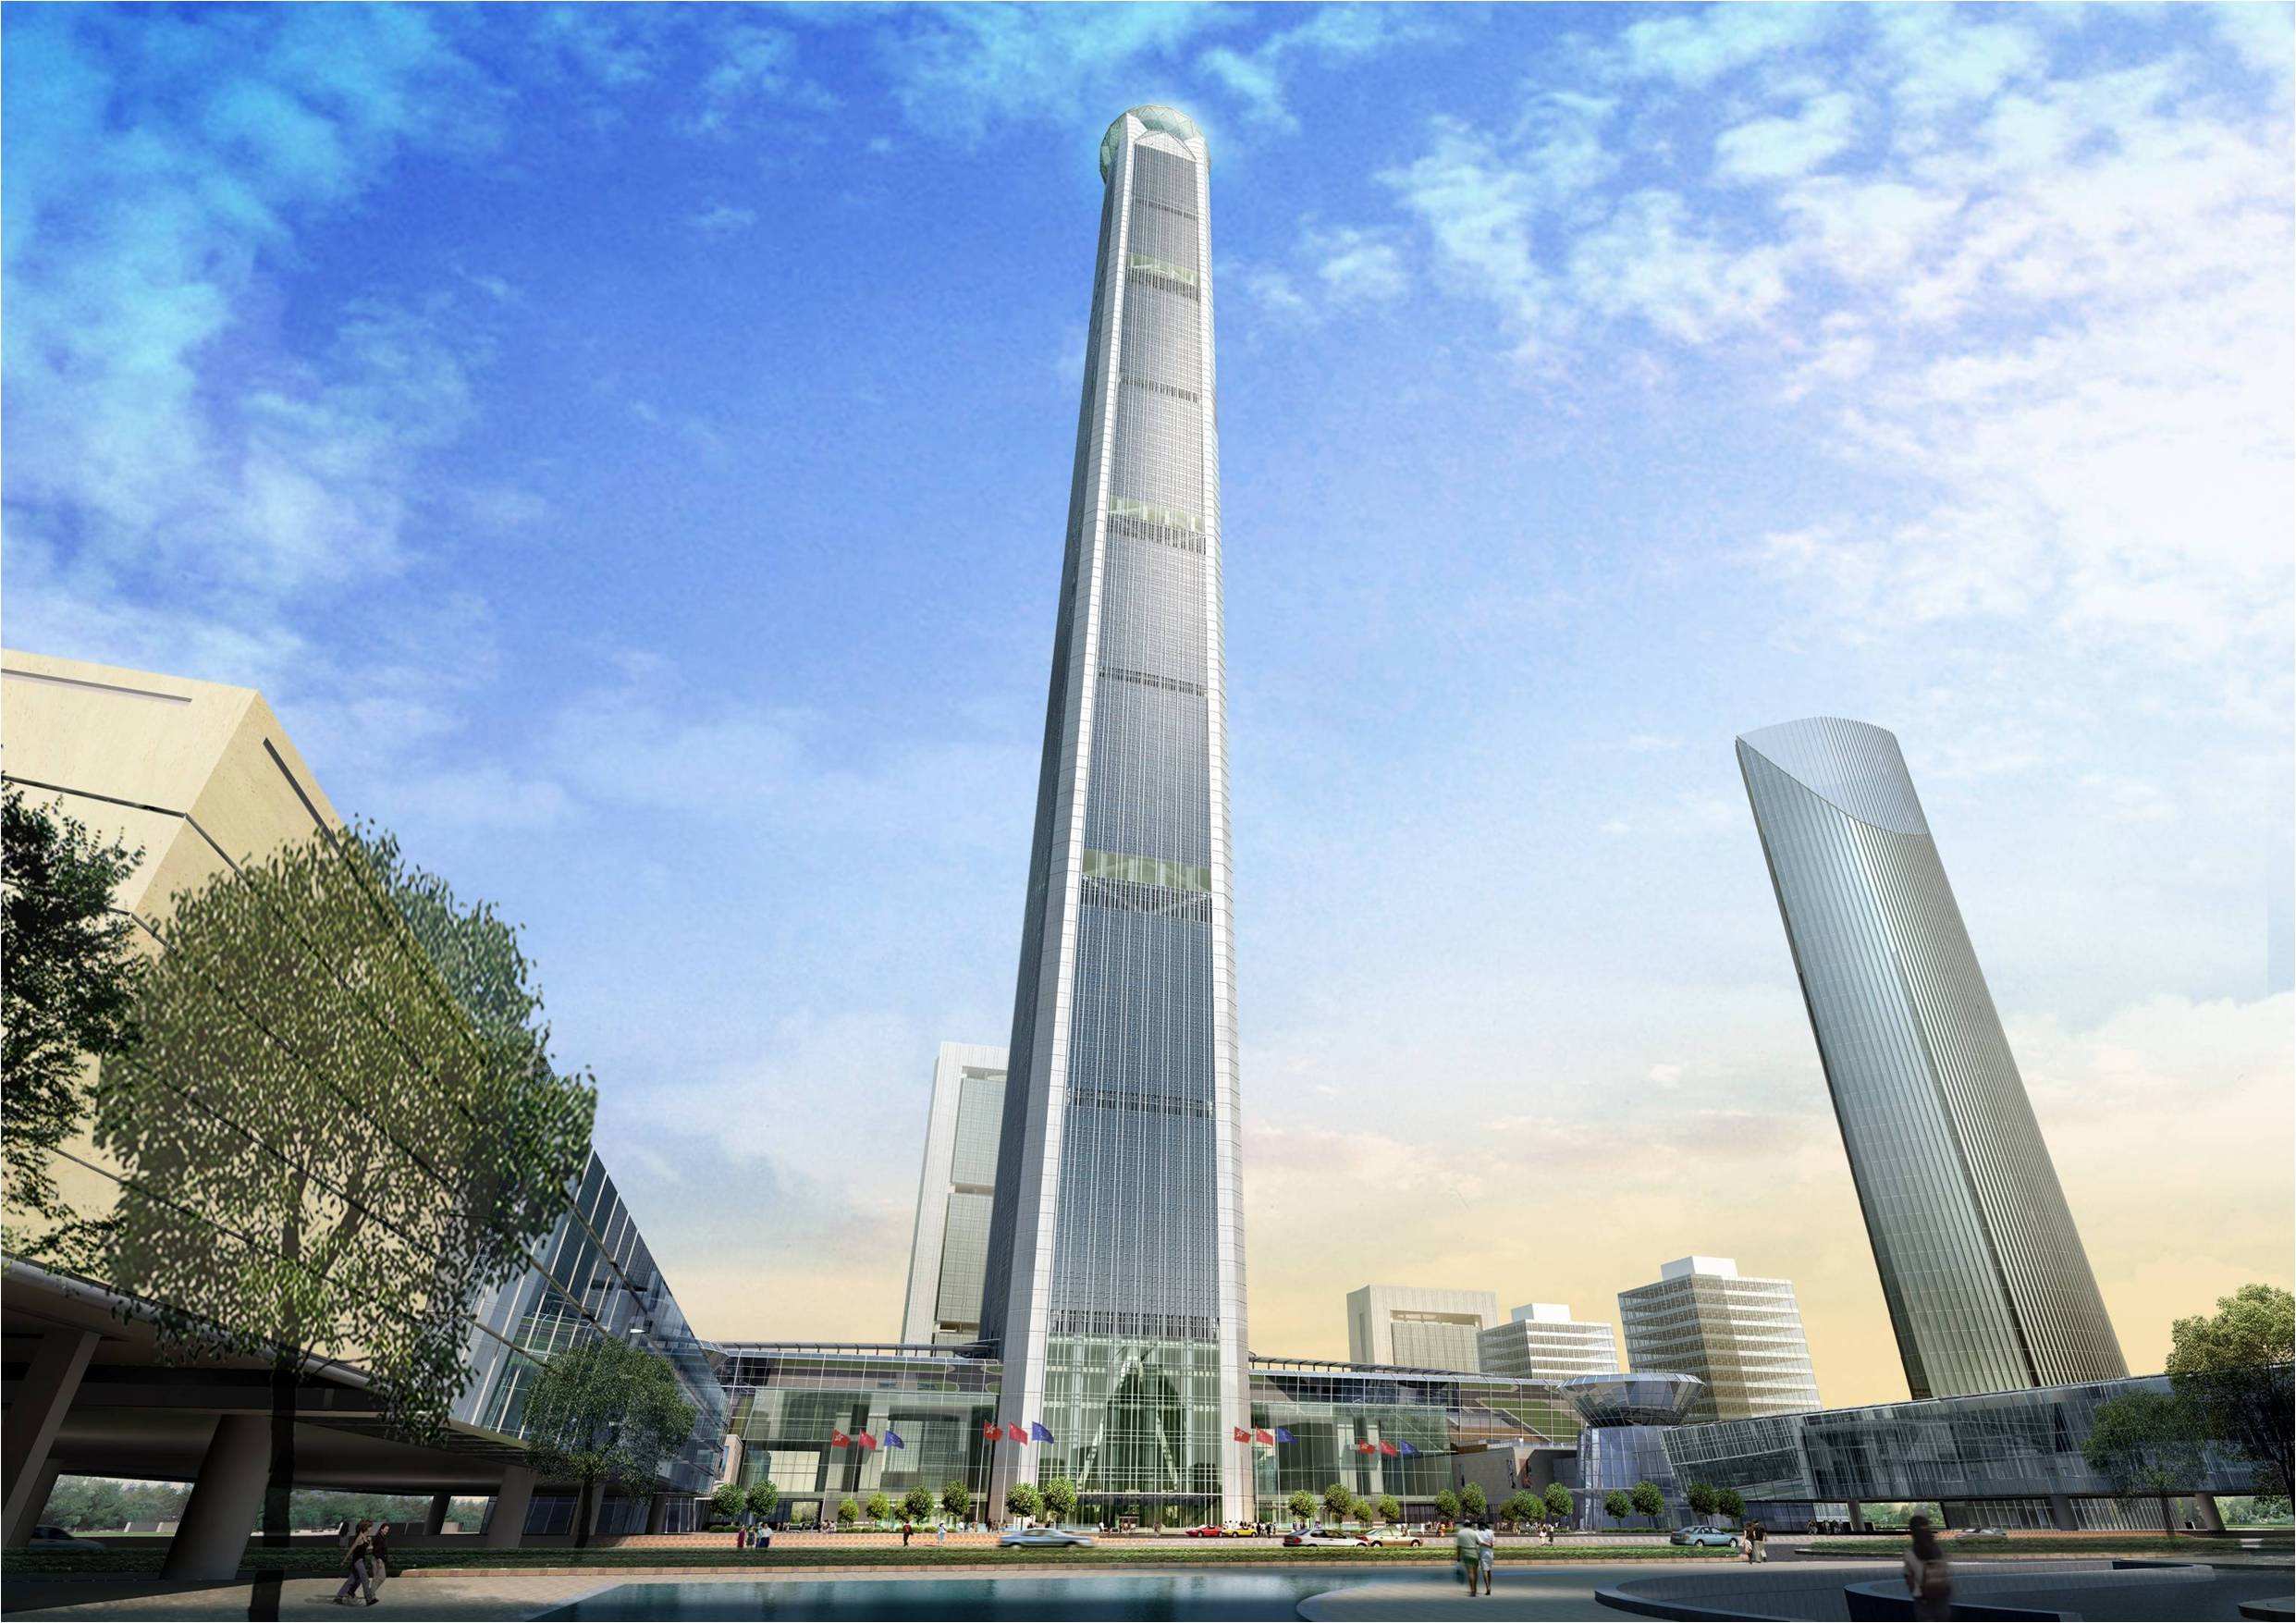 729米 武汉绿地中心:636米 上海中心大厦:632米 天津高银117大厦:621